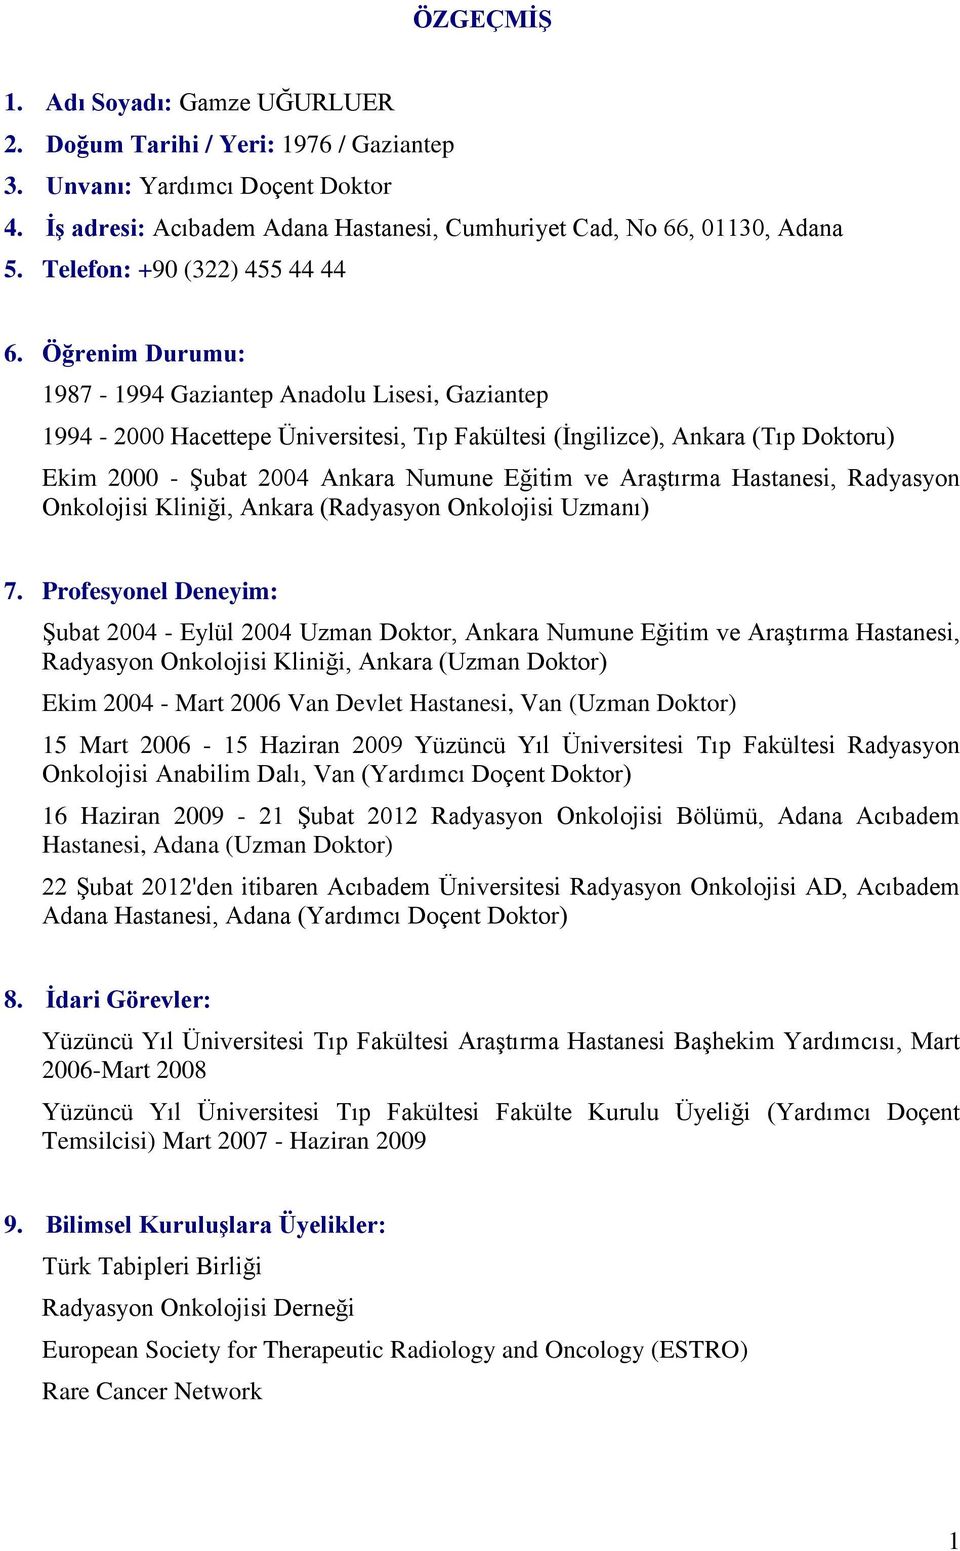 Öğrenim Durumu: 1987-1994 Gaziantep Anadolu Lisesi, Gaziantep 1994-2000 Hacettepe Üniversitesi, Tıp Fakültesi (İngilizce), Ankara (Tıp Doktoru) Ekim 2000 - Şubat 2004 Ankara Numune Eğitim ve